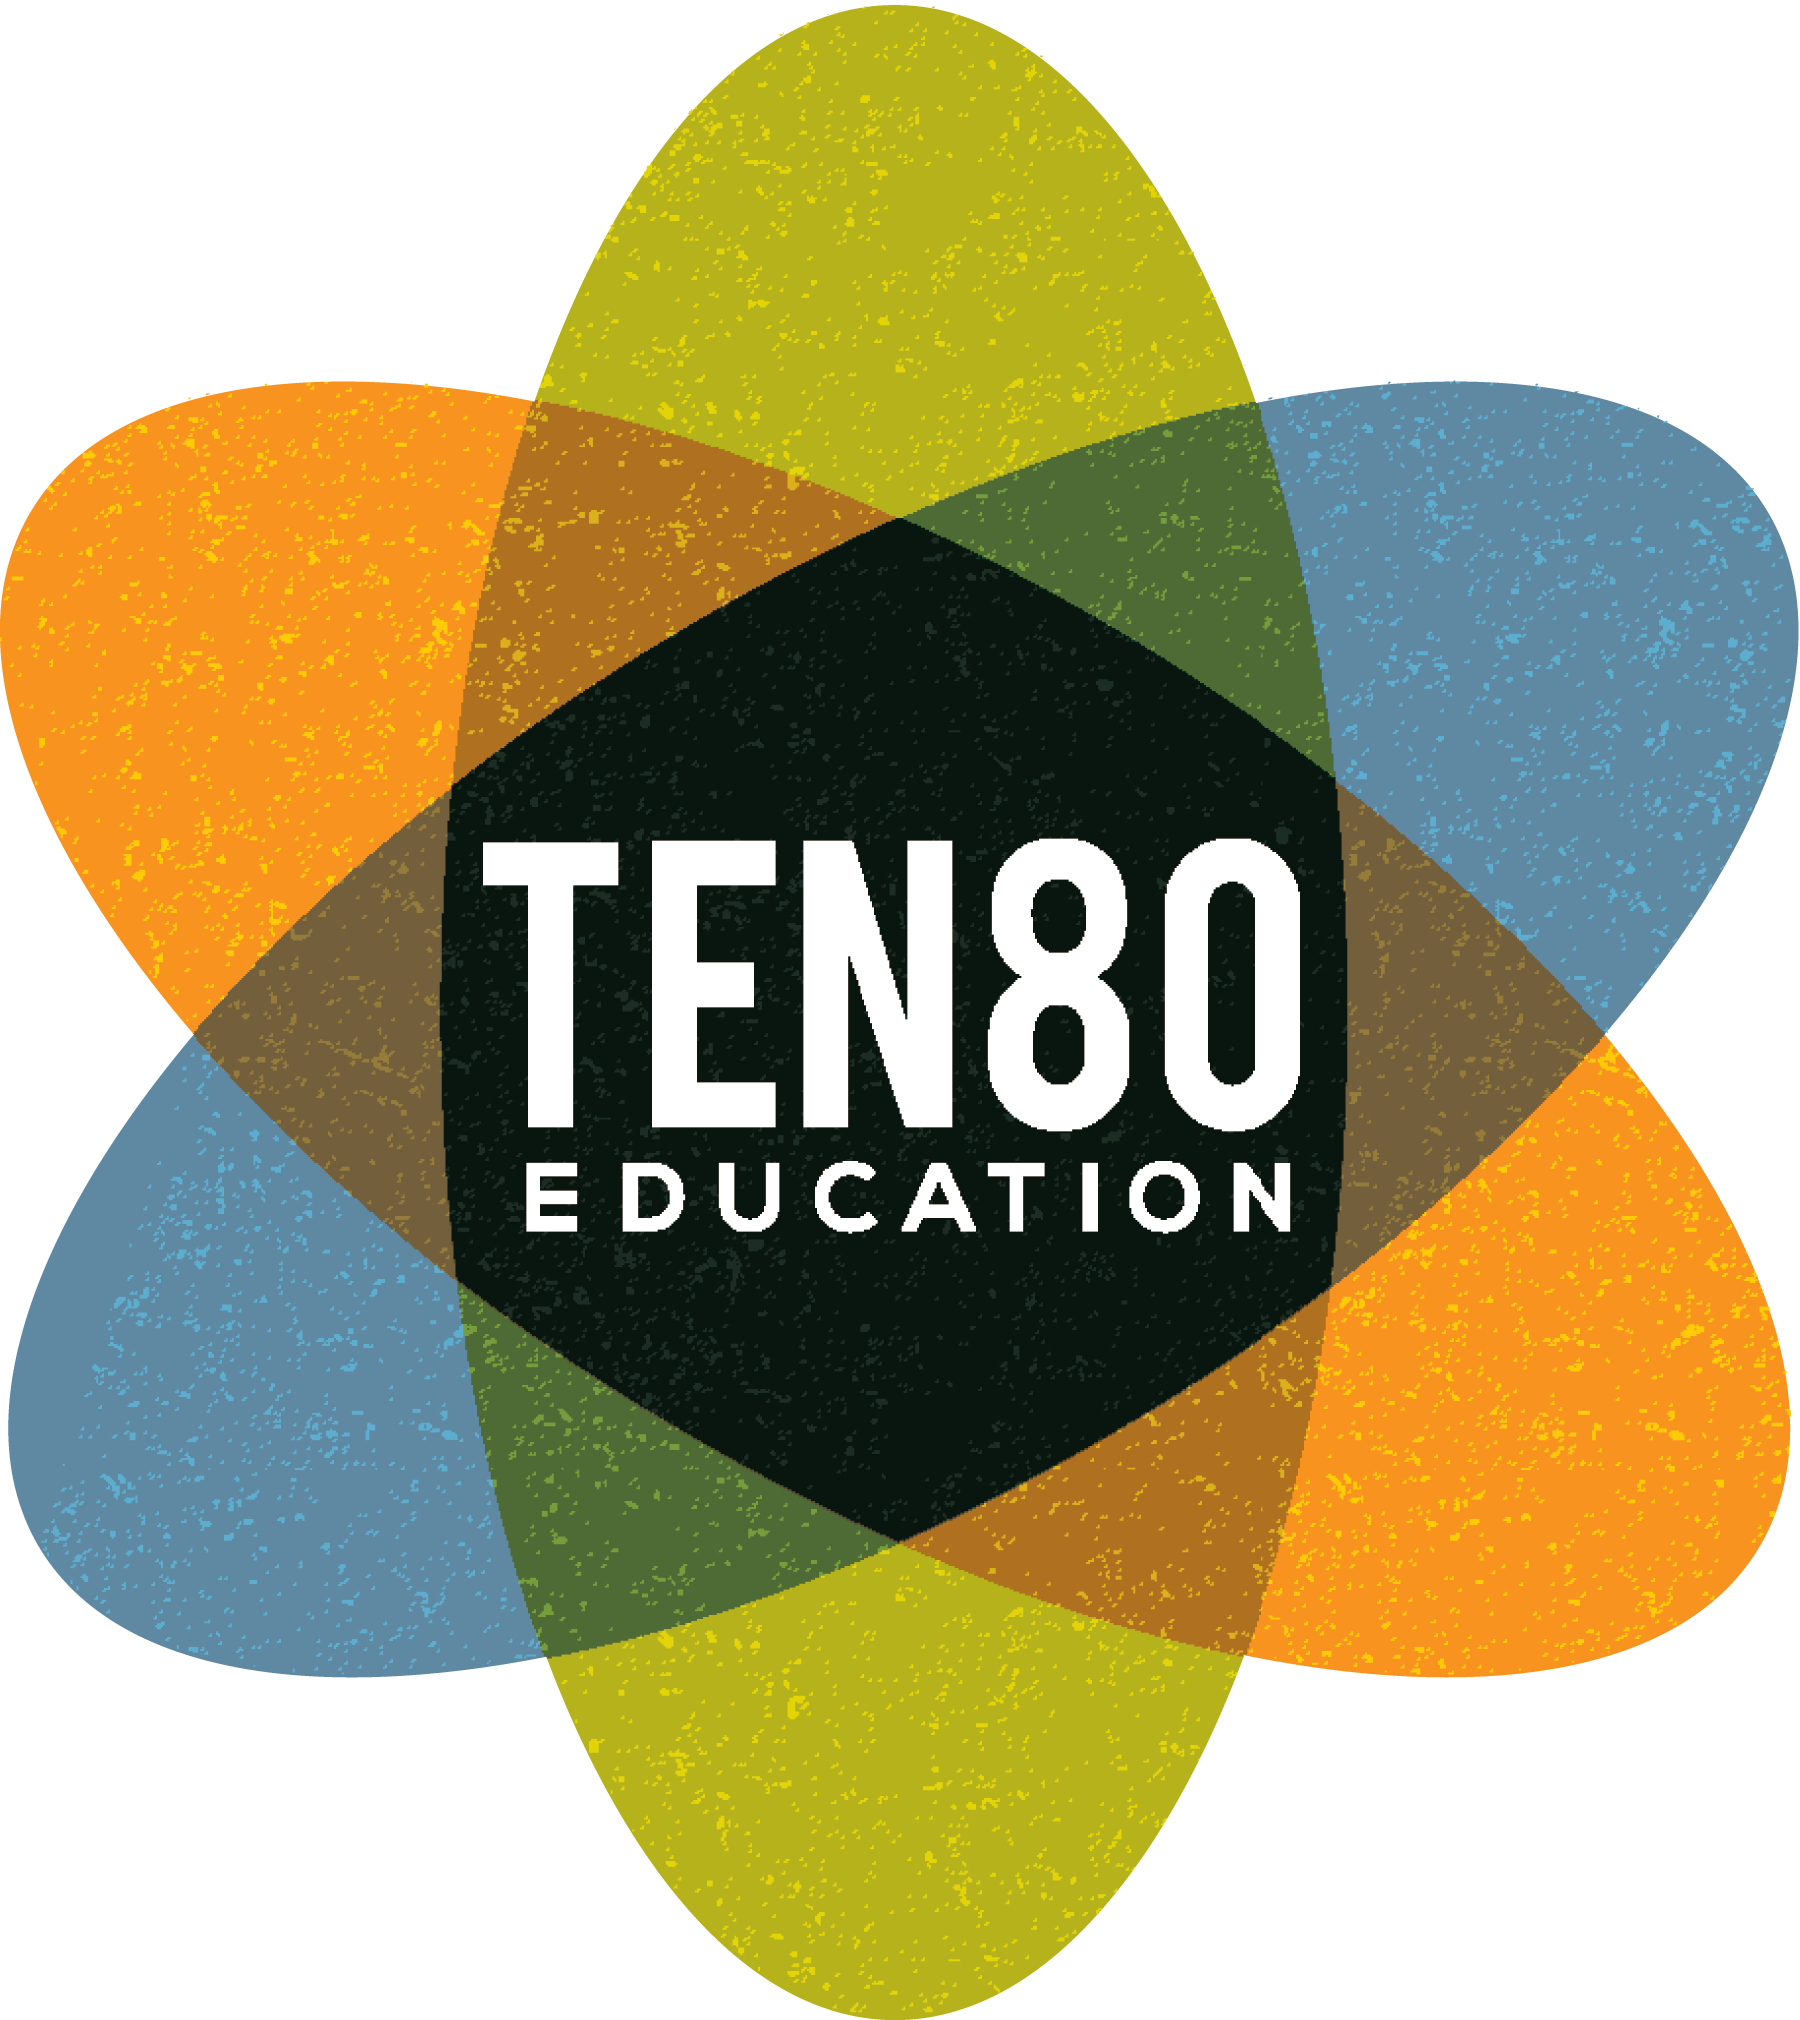 Ten80 Education